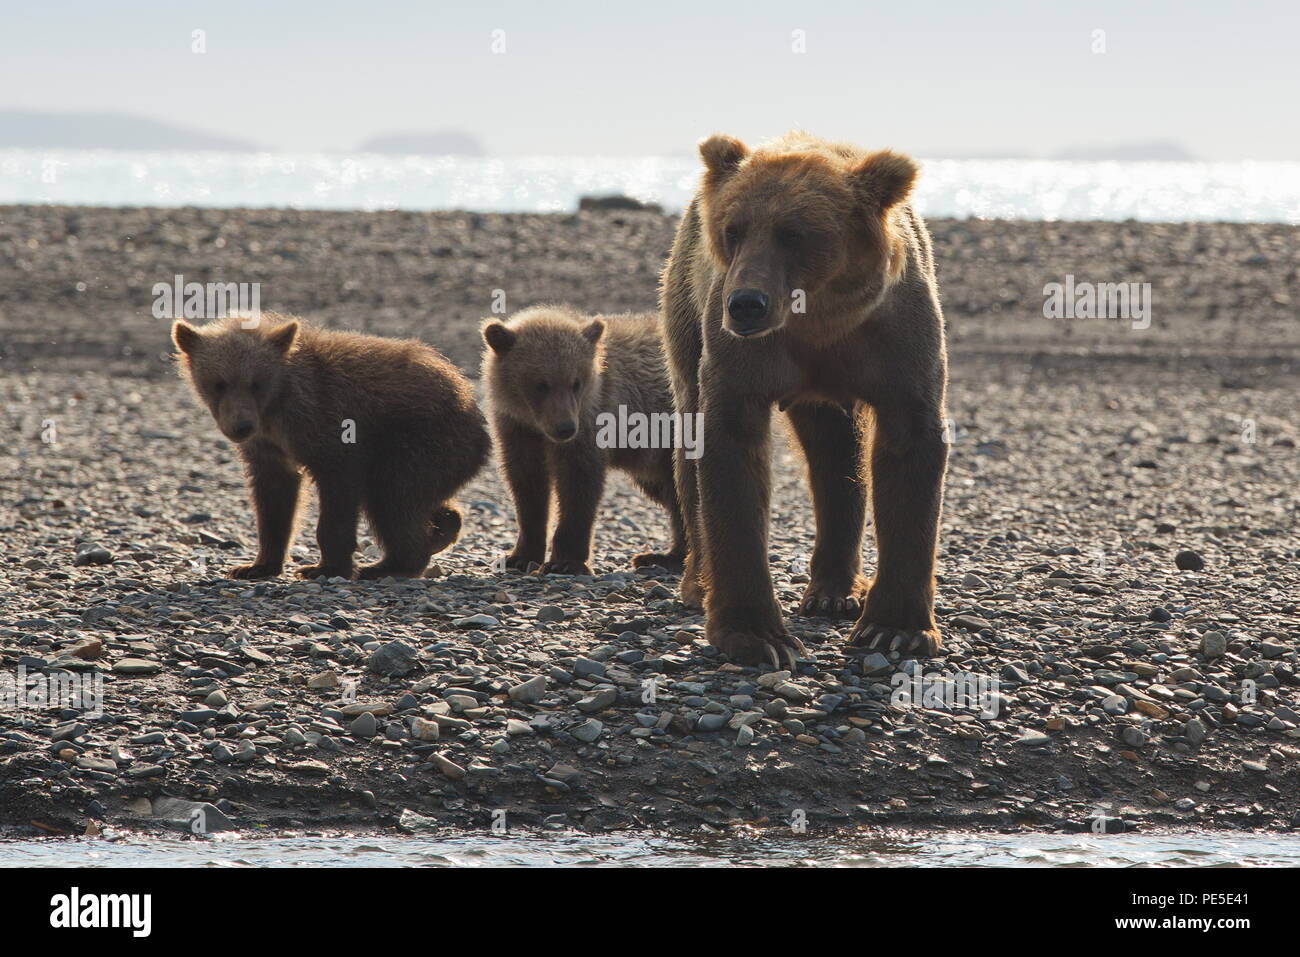 Mère de l'ours et d'oursons en truie Natioal de Kenai en Alaska Parc - Août 2018 Banque D'Images